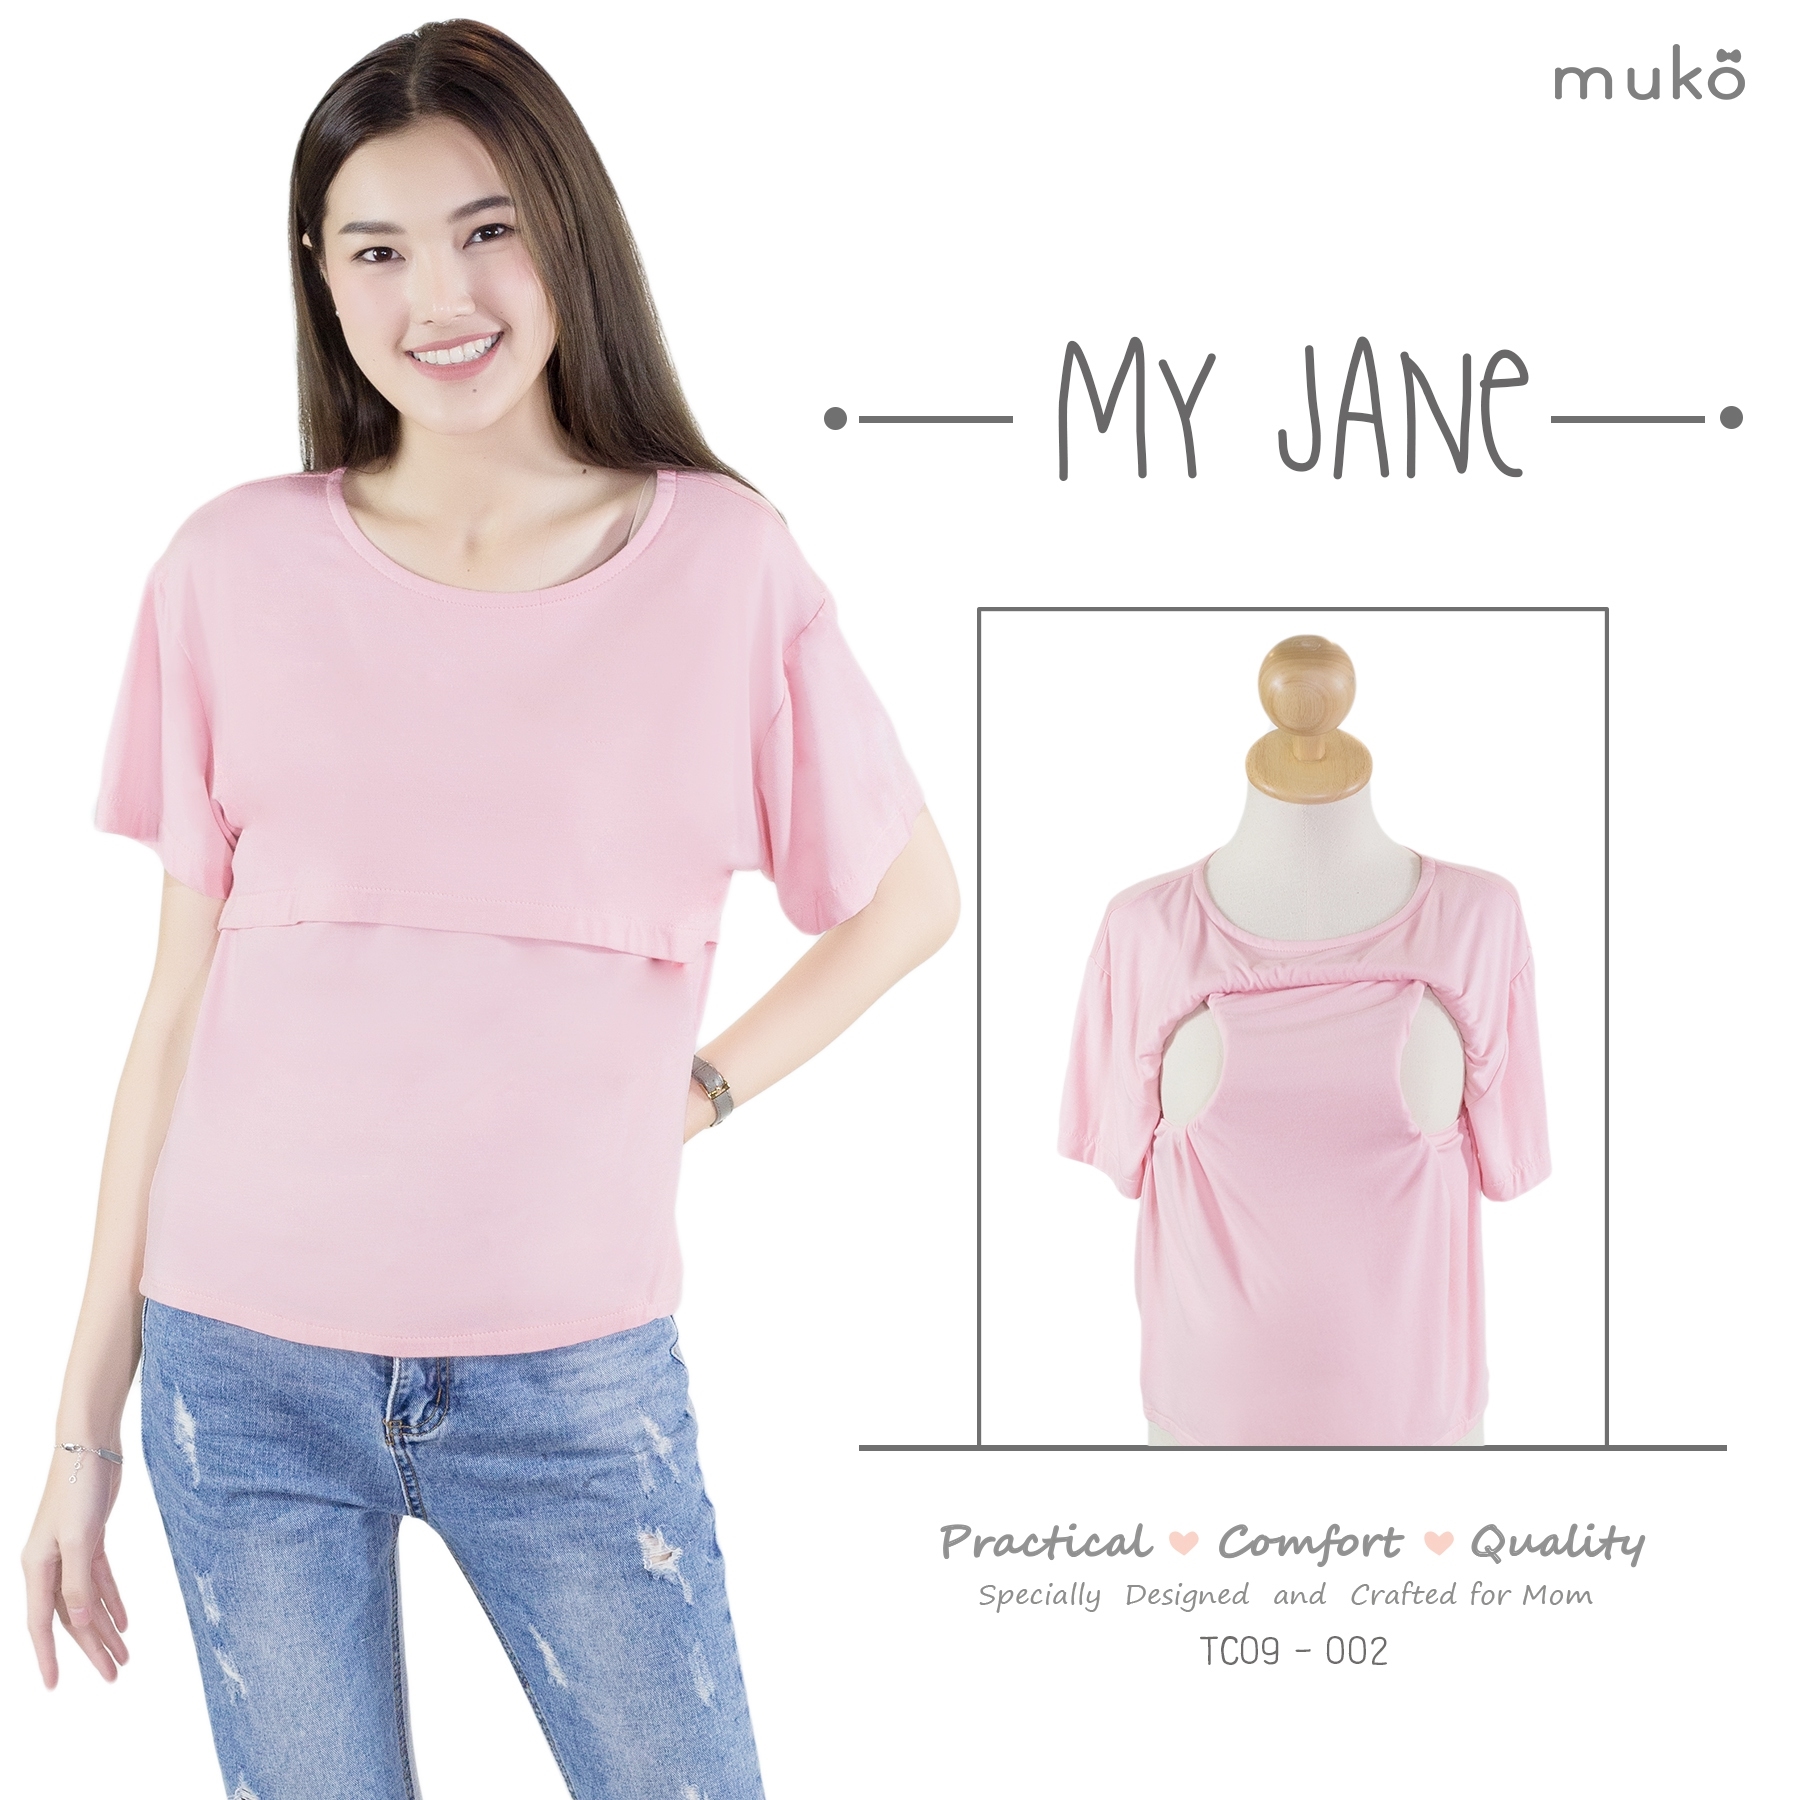 Muko My Jane  เสื้อเปิดให้นมคลุมท้อง TC09-002 สีชมพู